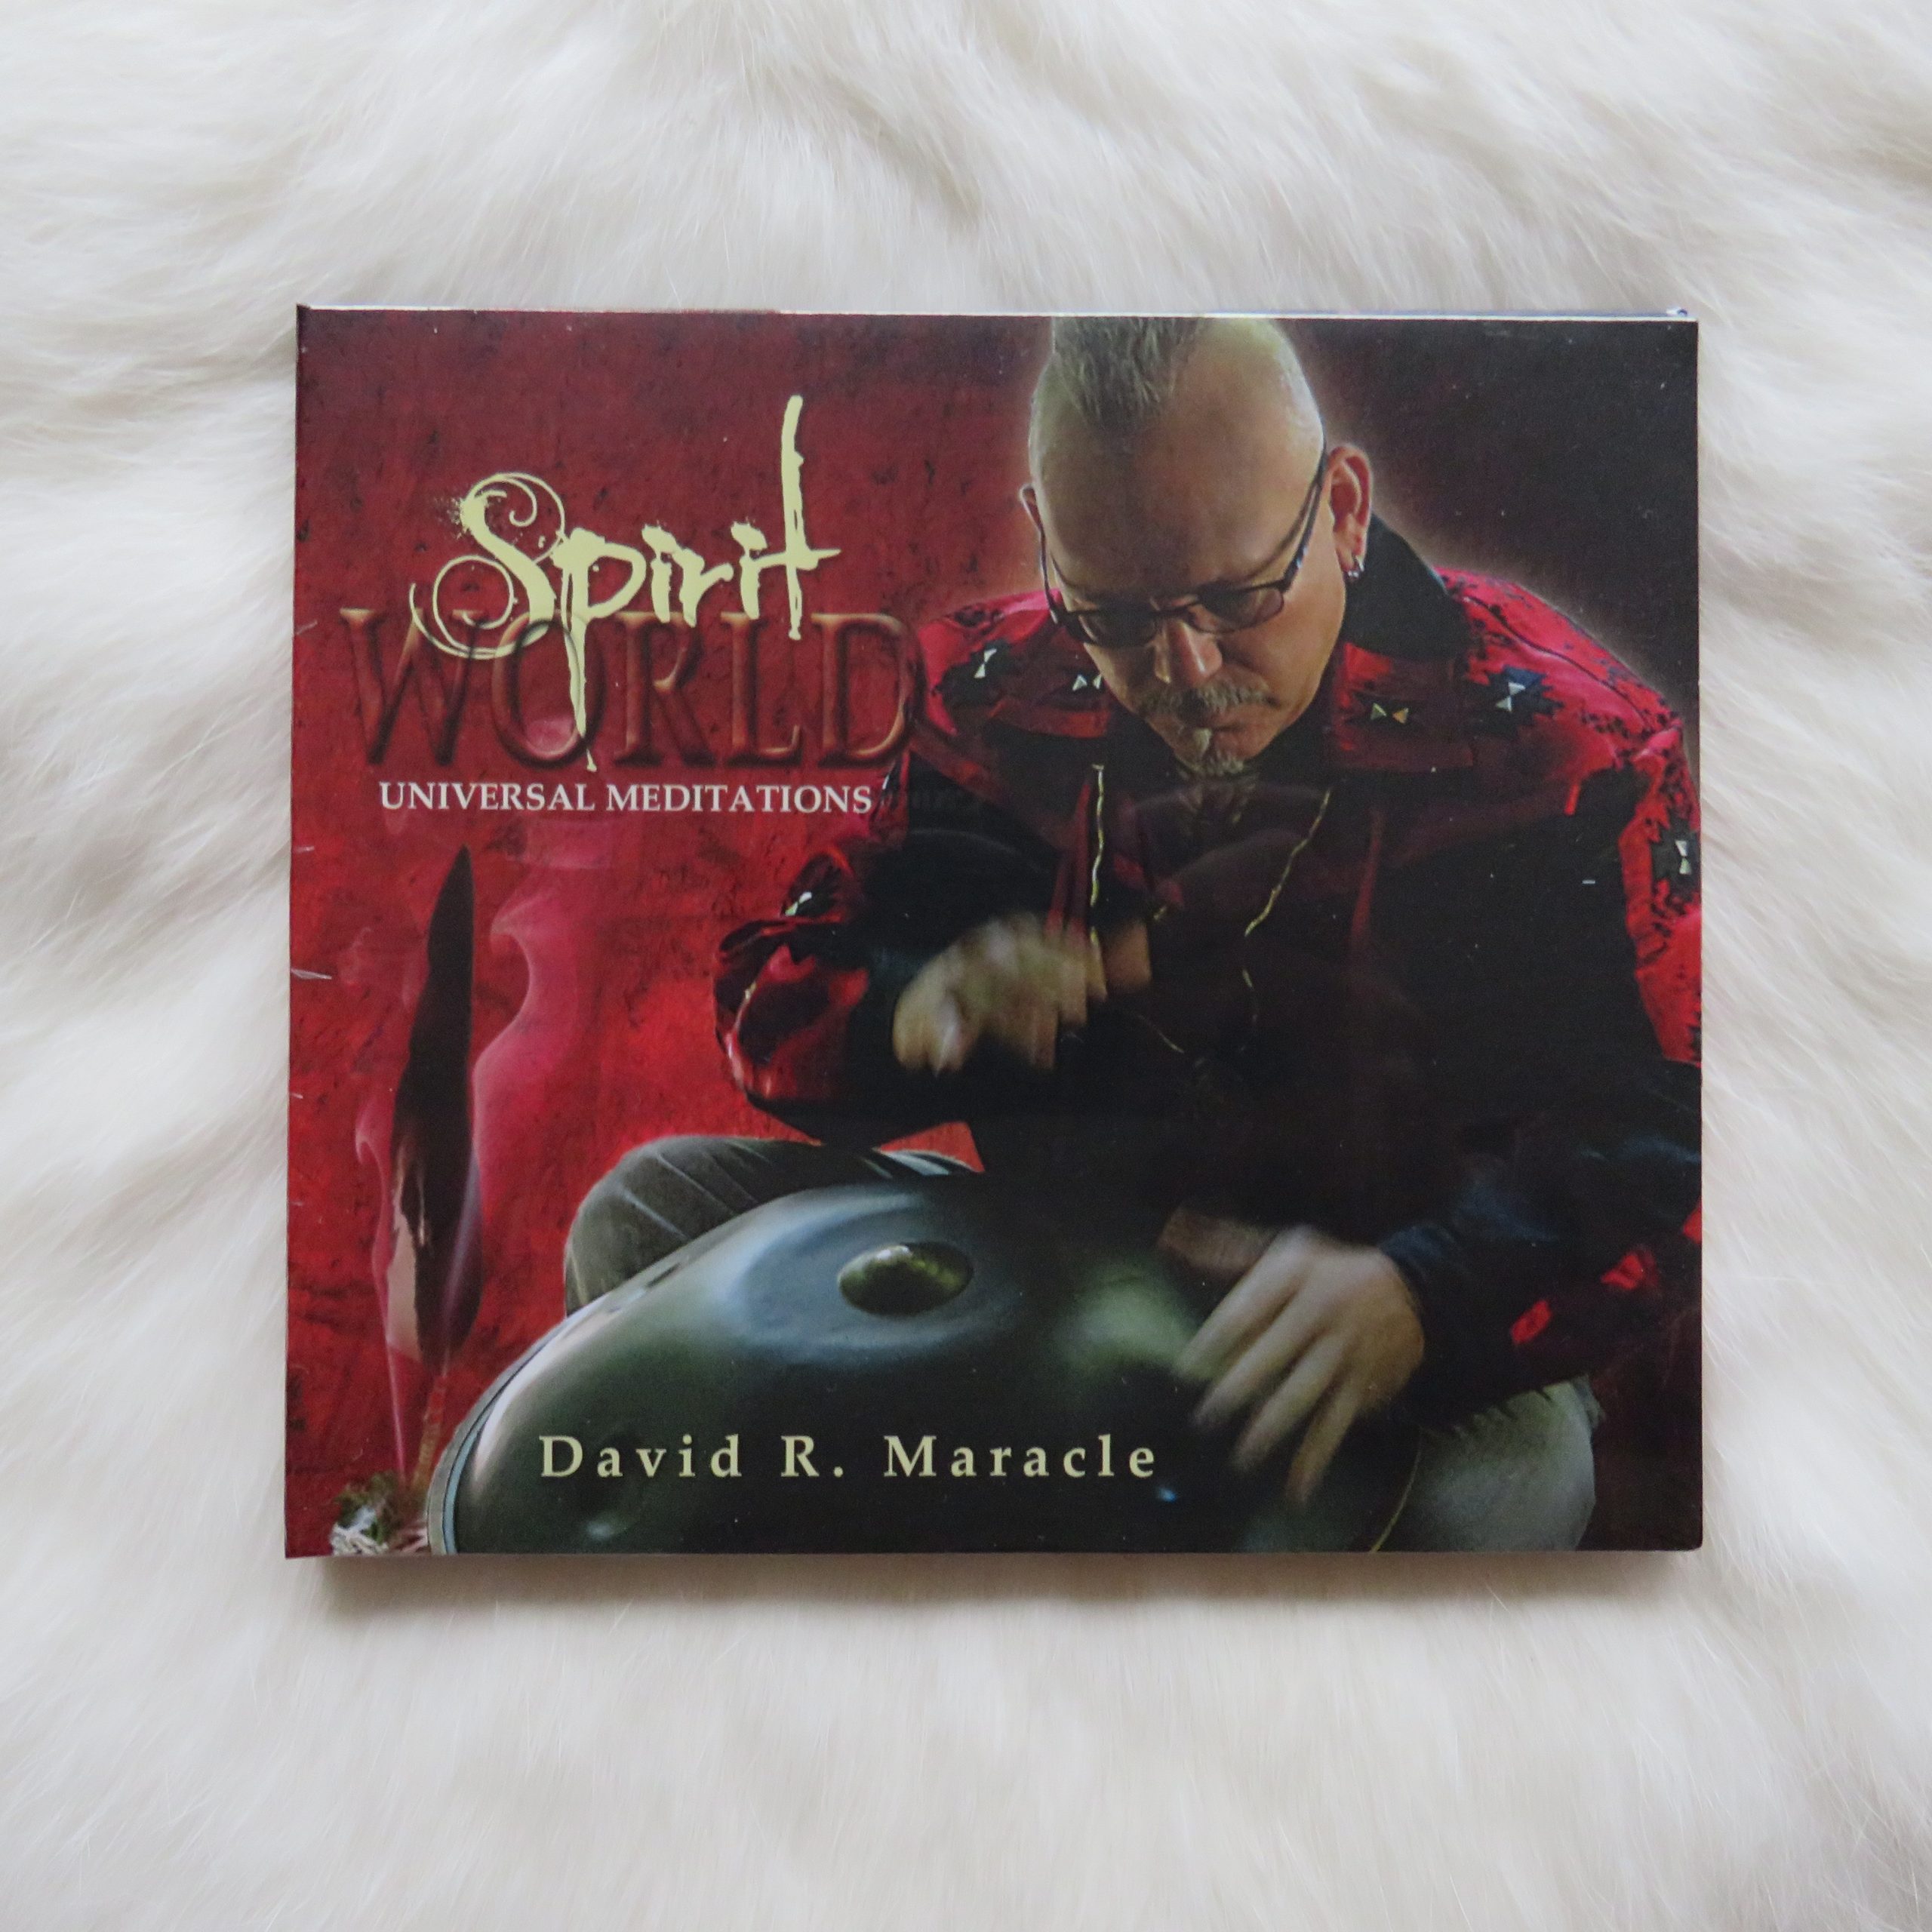 CD David R Maracle “spirit world”